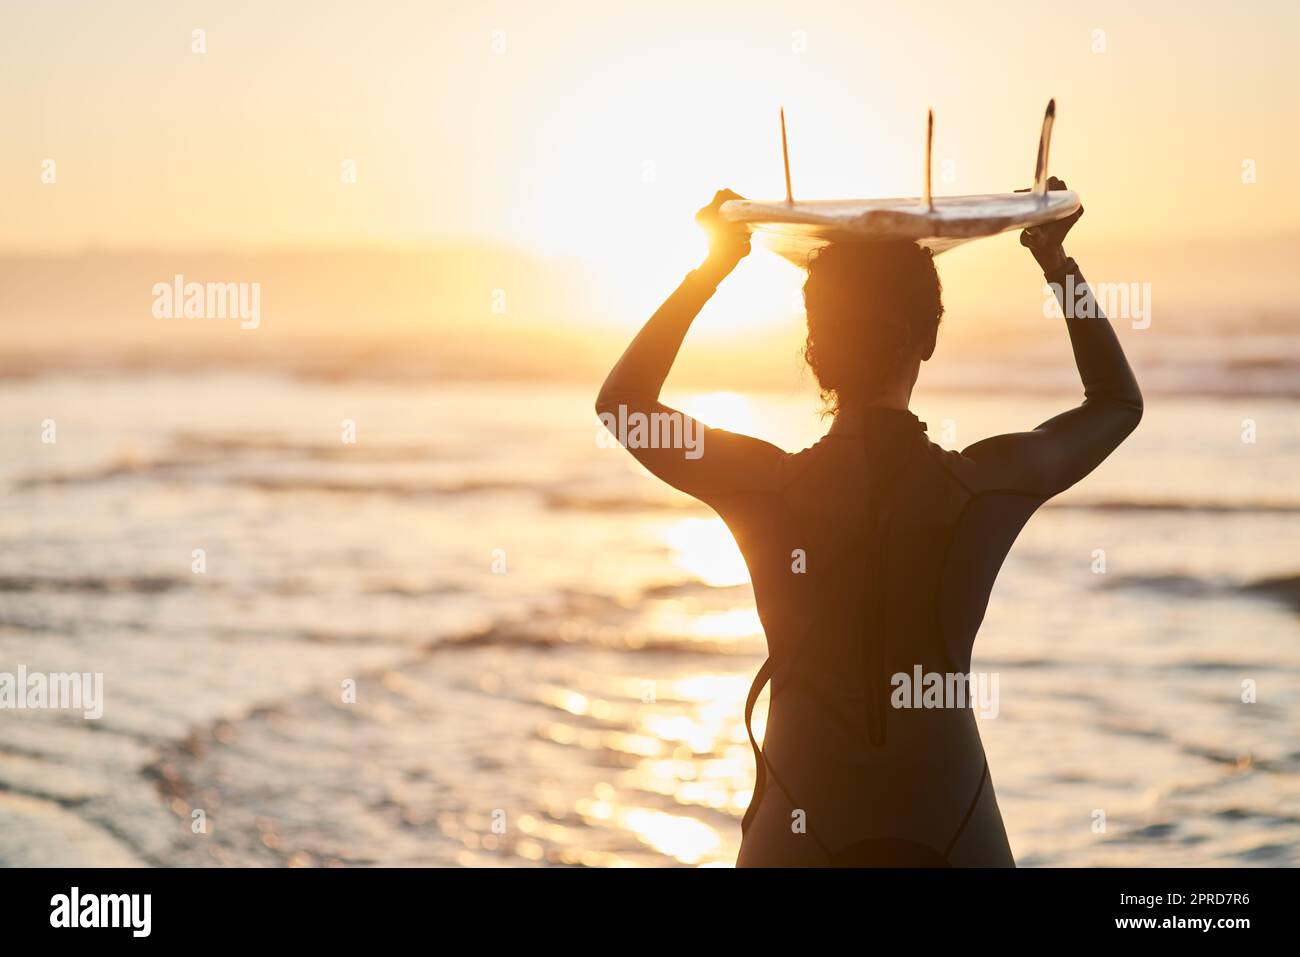 Im destra dove Ive apparteneva sempre. Ripresa di una surfista che porta la sua tavola da surf sulla testa in spiaggia. Foto Stock